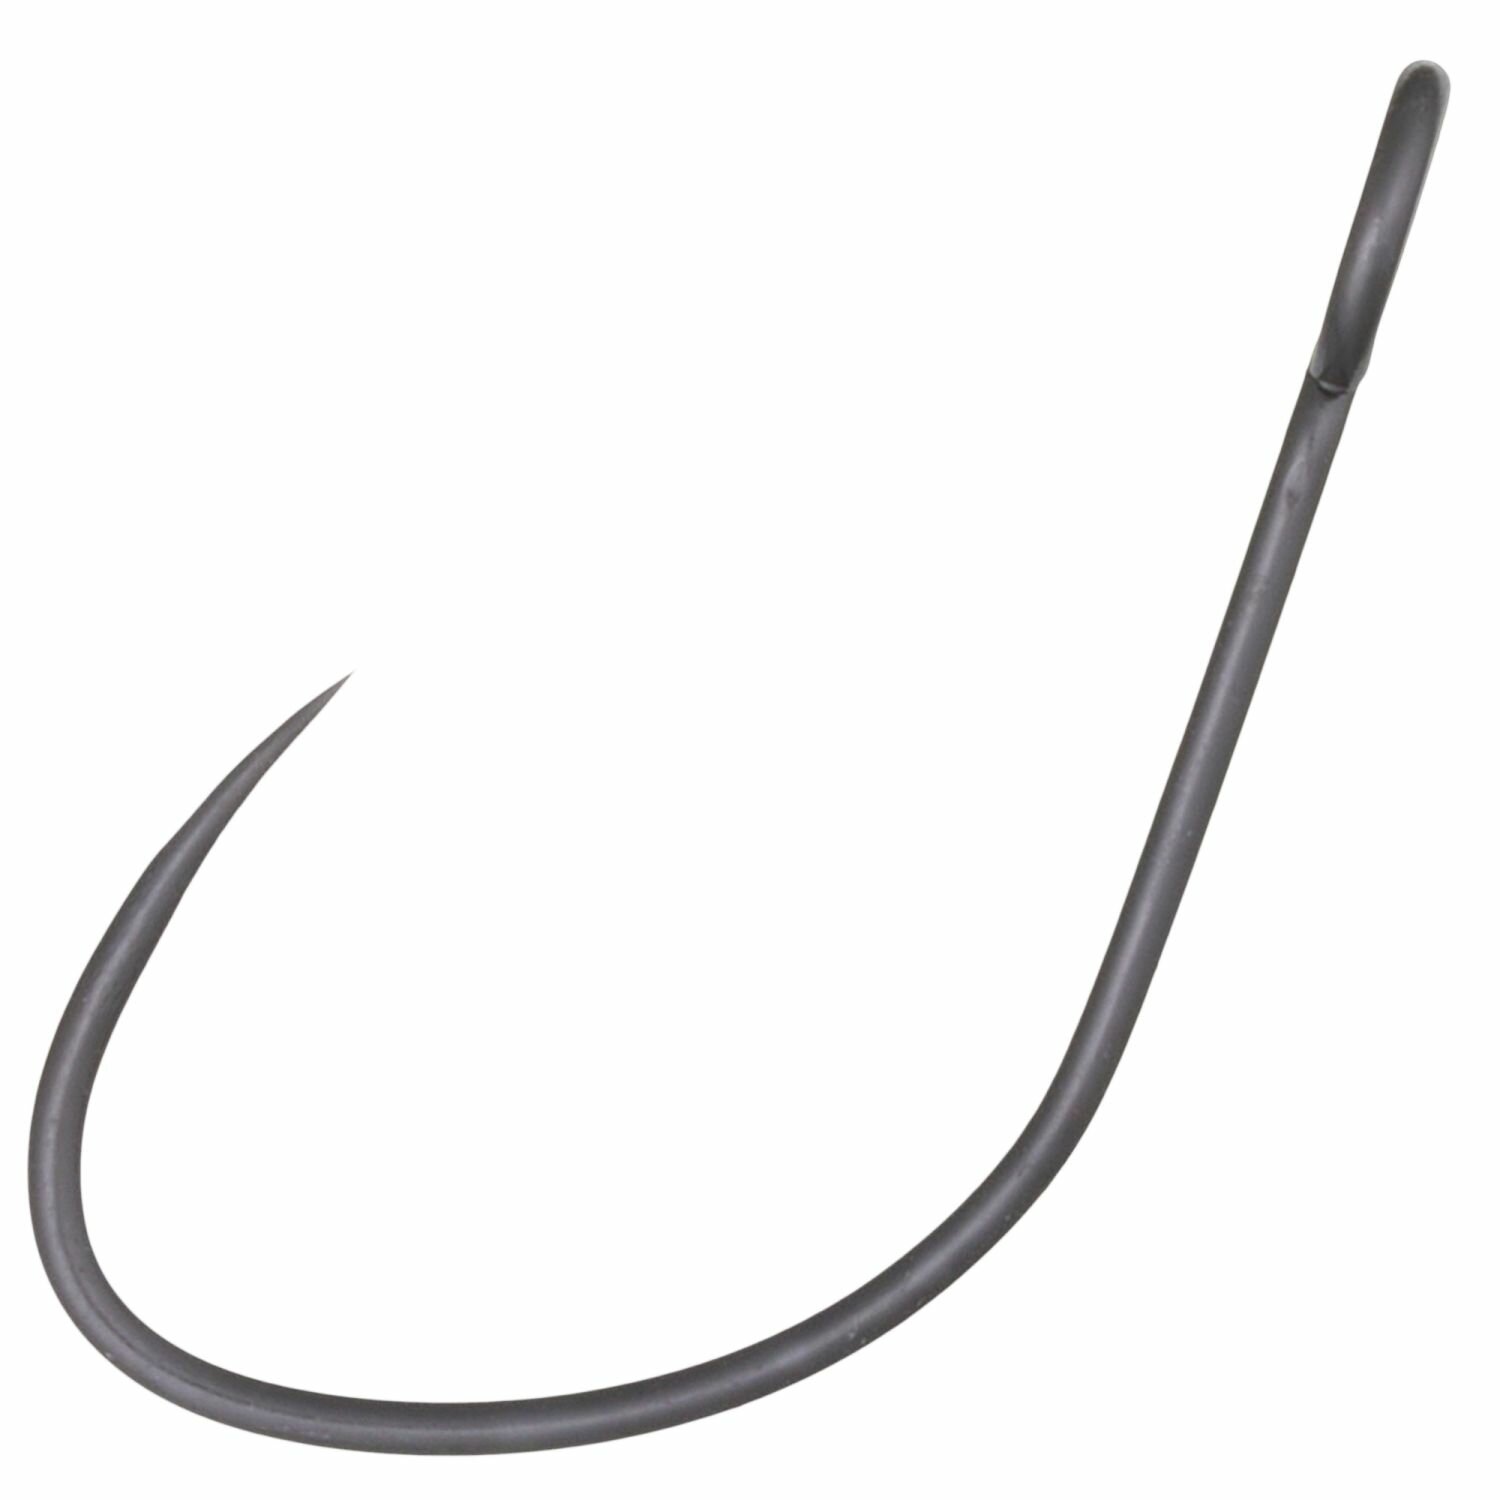 Крючок рыболовный одинарный Vanfook Expert Hook Heavy Wire SP-41BL stealth black #2 (8шт) для рыбалки на щуку, судака, окуня